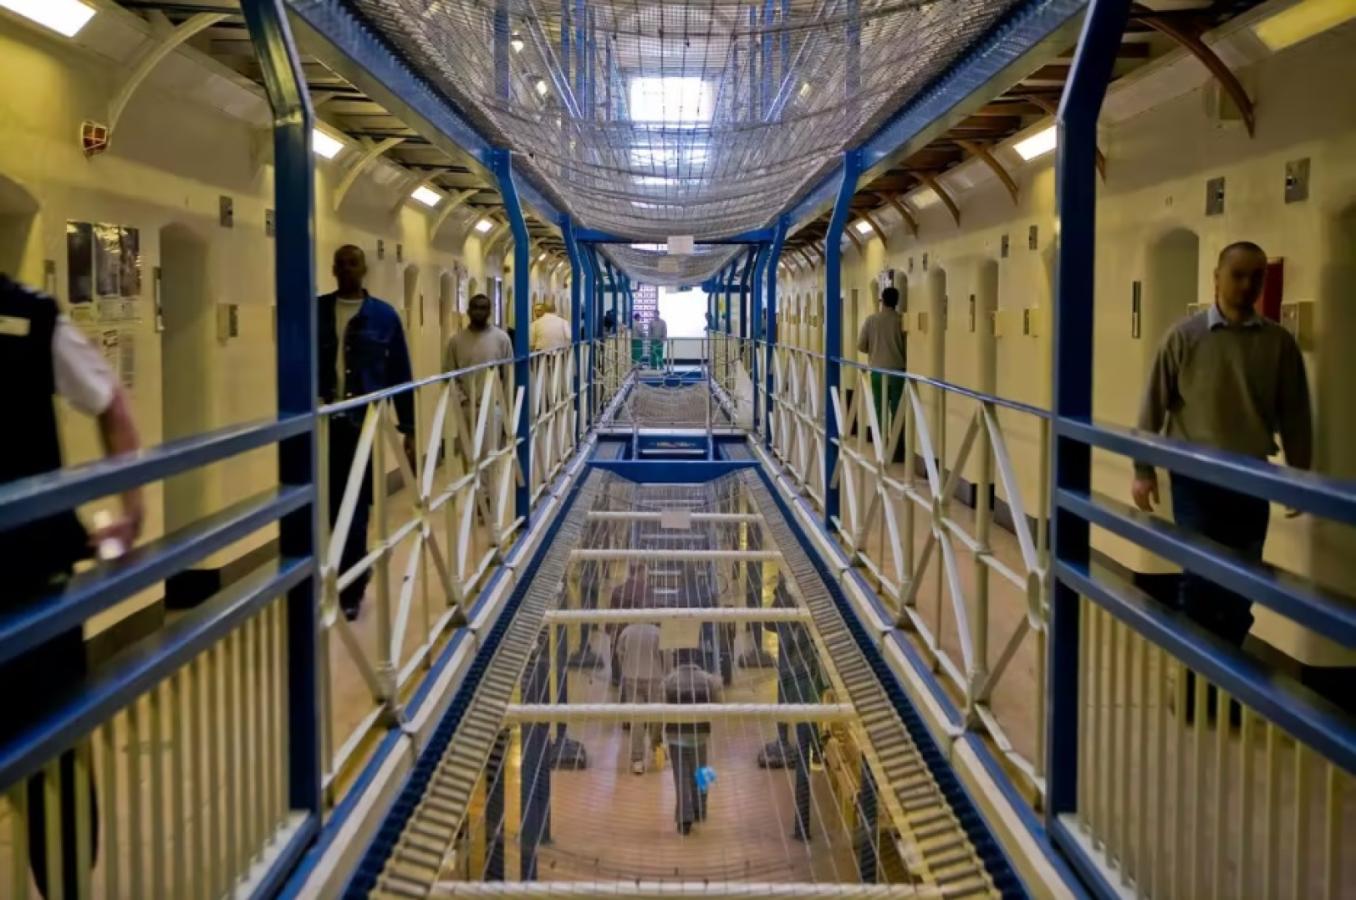 Imagen Así es por dentro la prisión de Wandsworth, donde cumple la condena Becker.